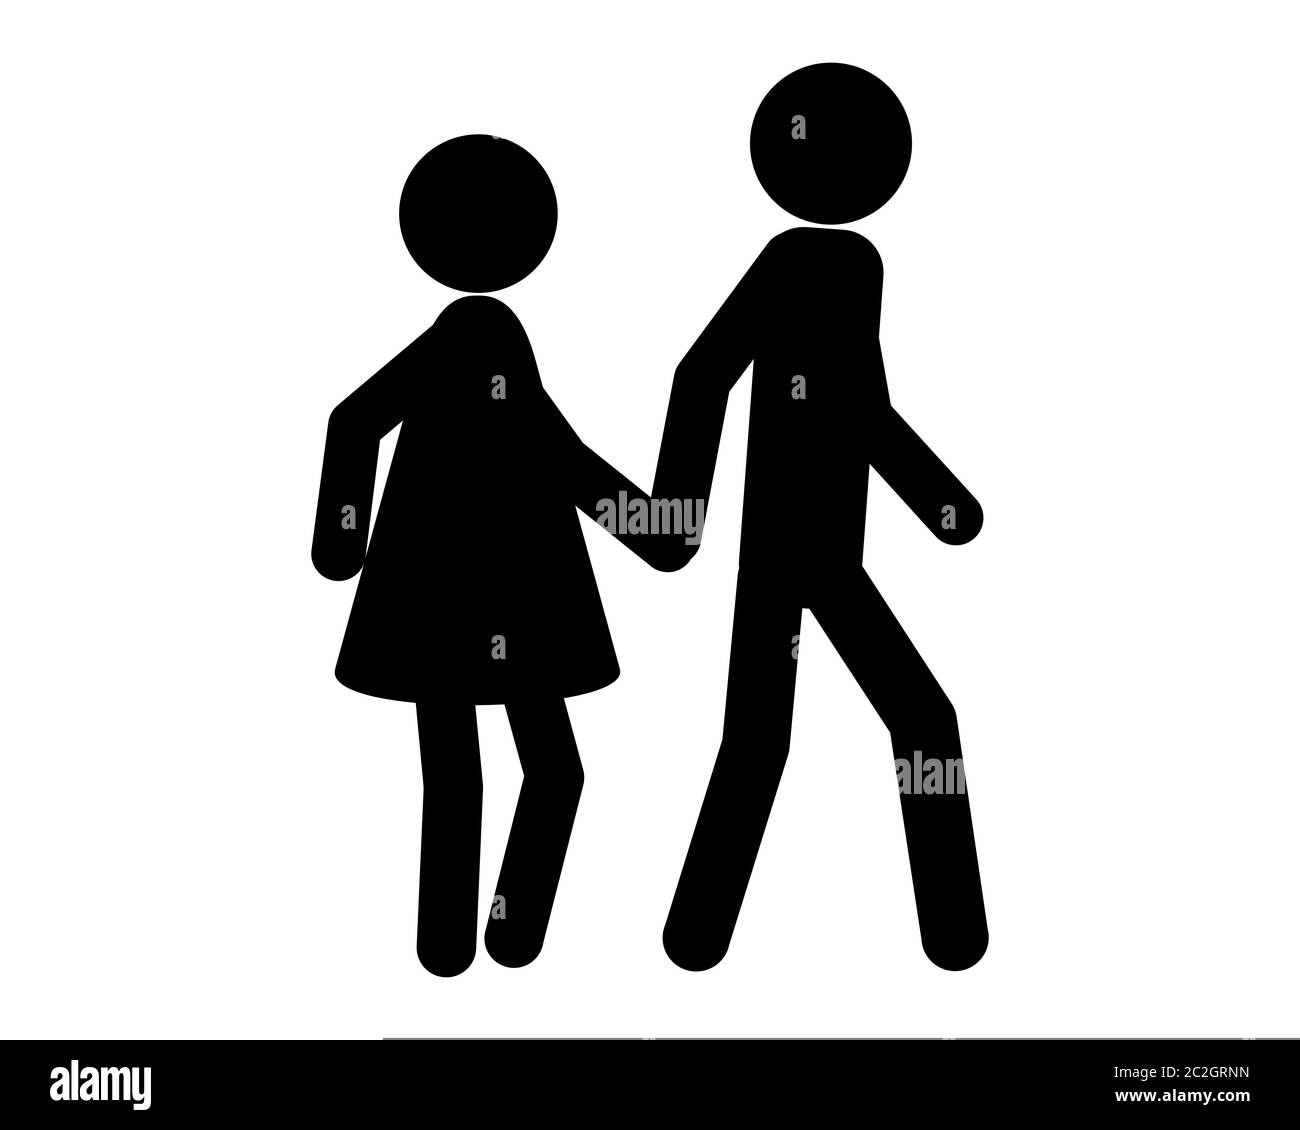 Mann und Frau beim spazieren gehen Hand in Hand Stock Photo